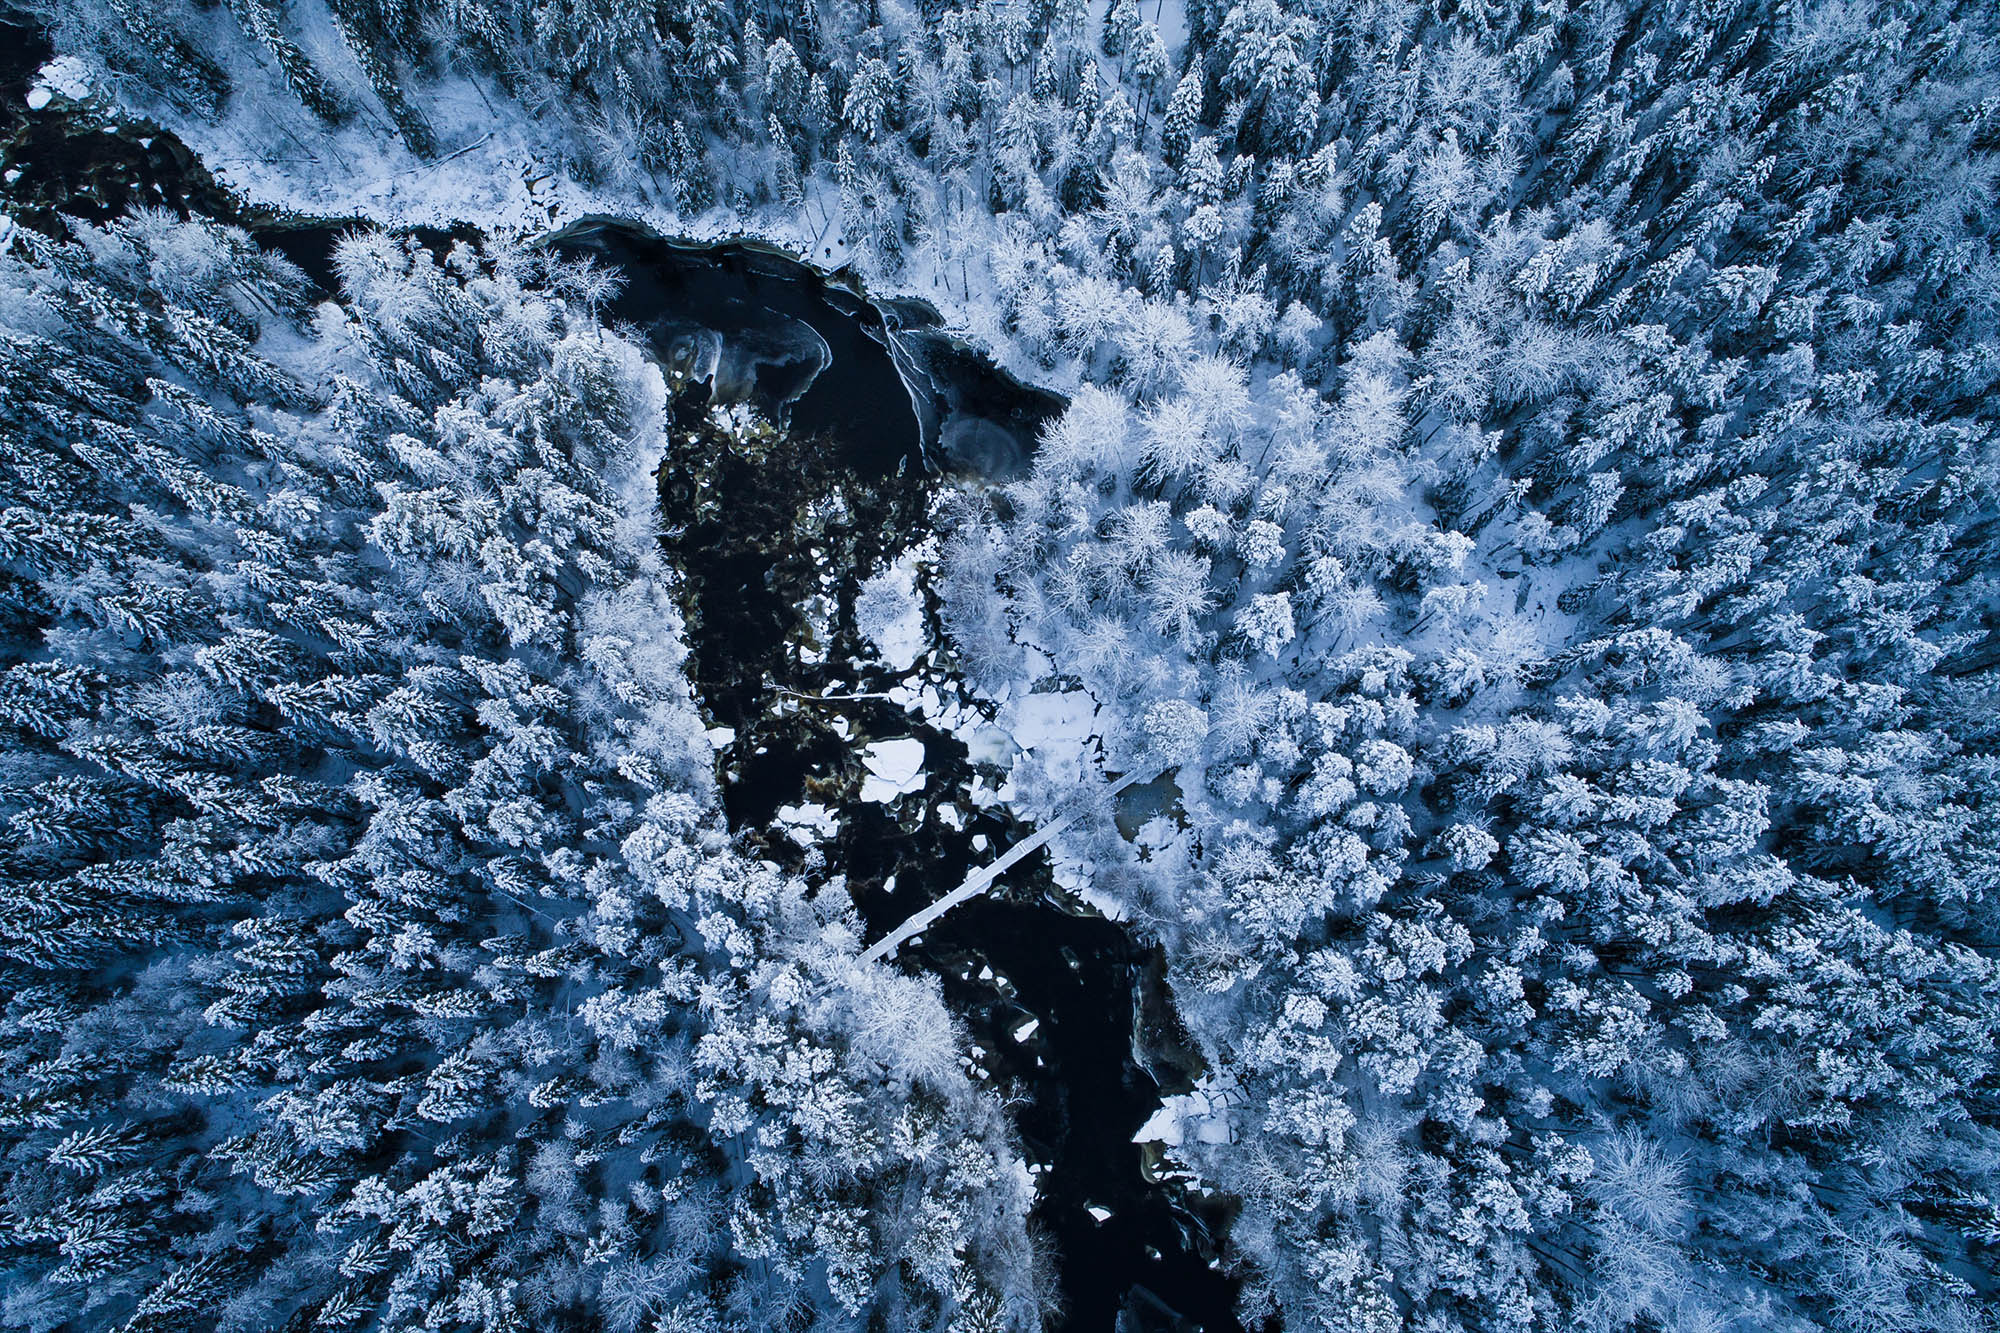 Winter scenery on Lapland